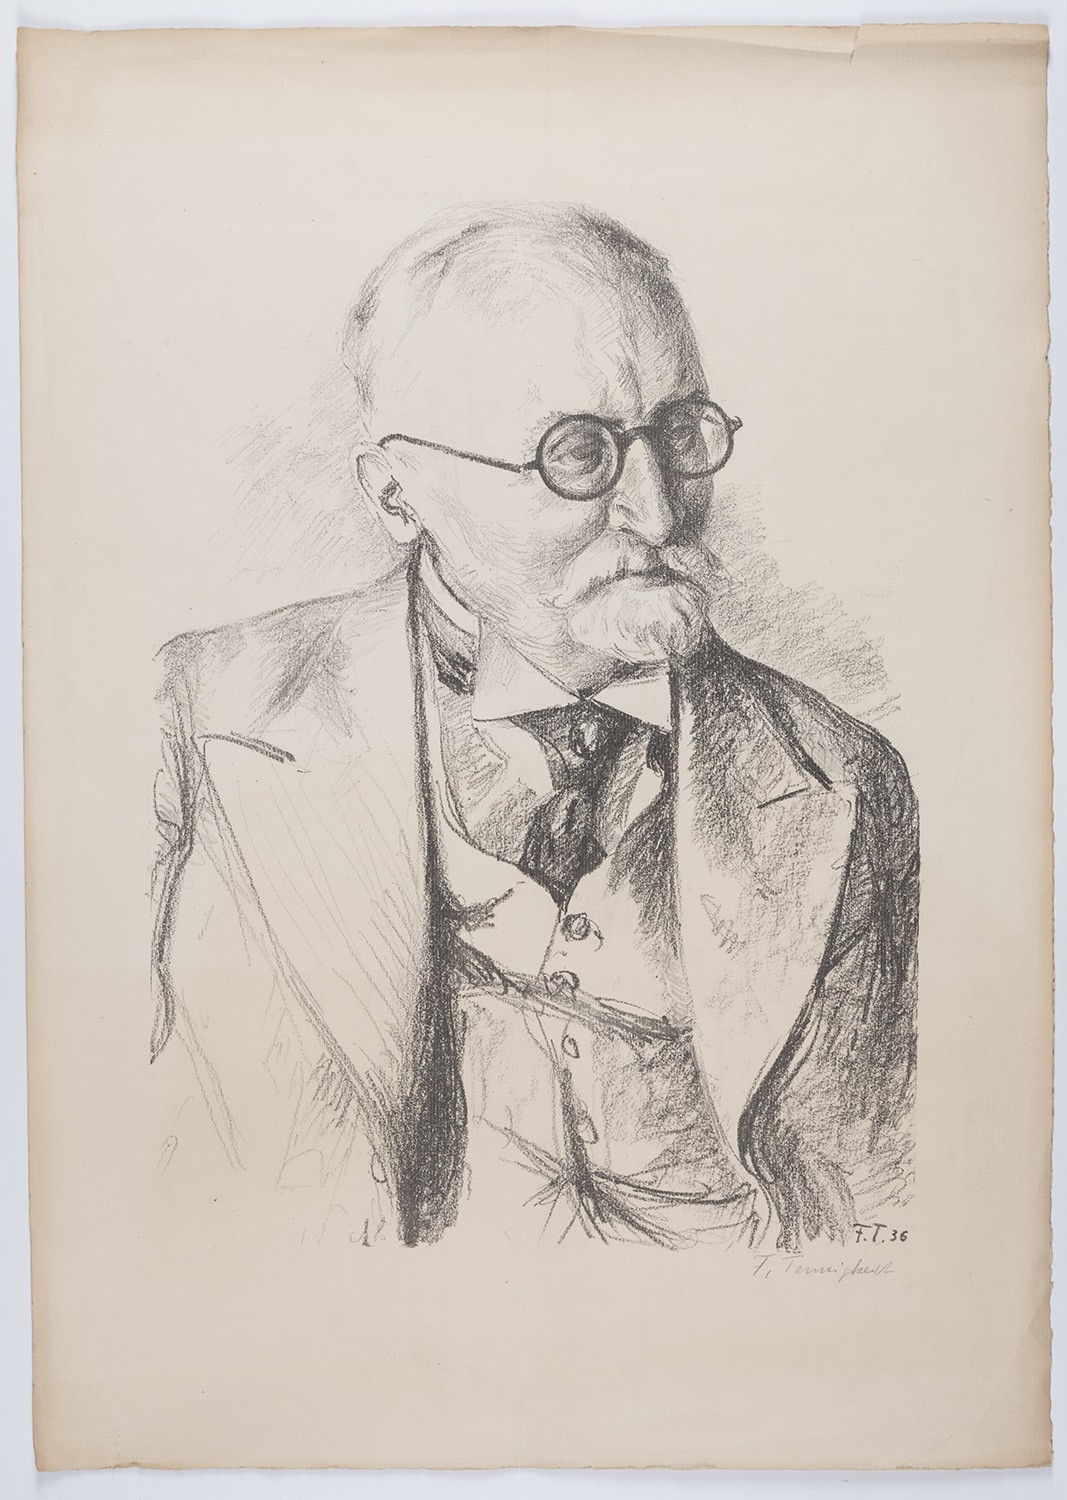 Möckel, Otto (1869-1937), Geigenbauer (Landesgeschichtliche Vereinigung für die Mark Brandenburg e.V., Archiv CC BY)